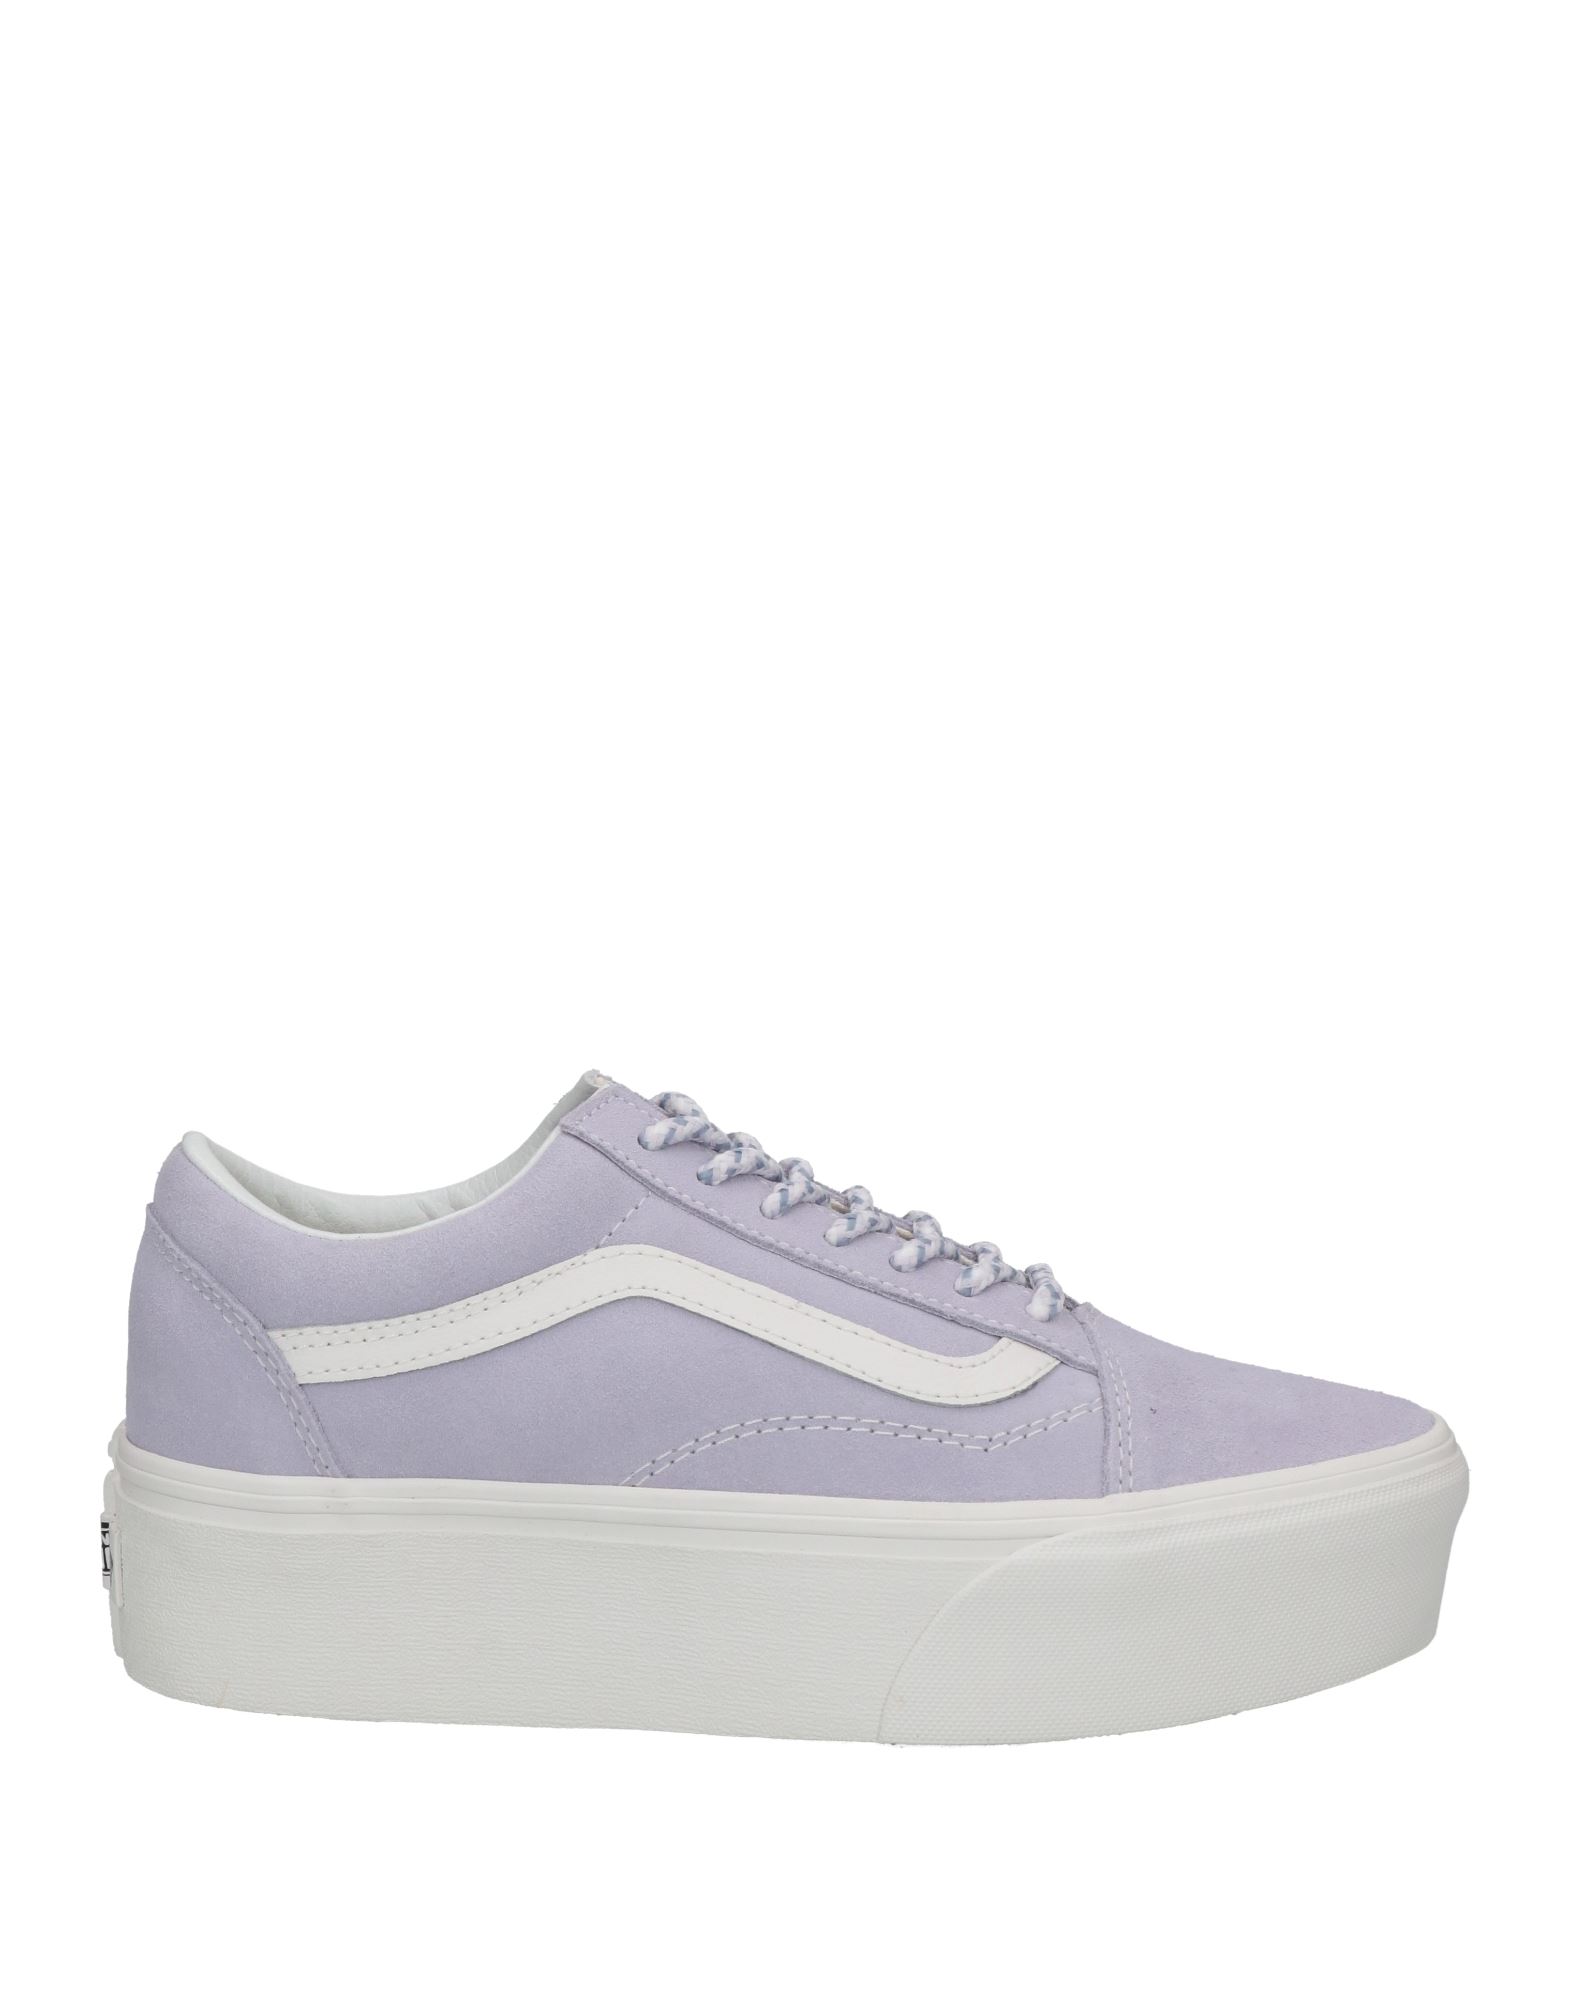 Vans Sneakers In Purple